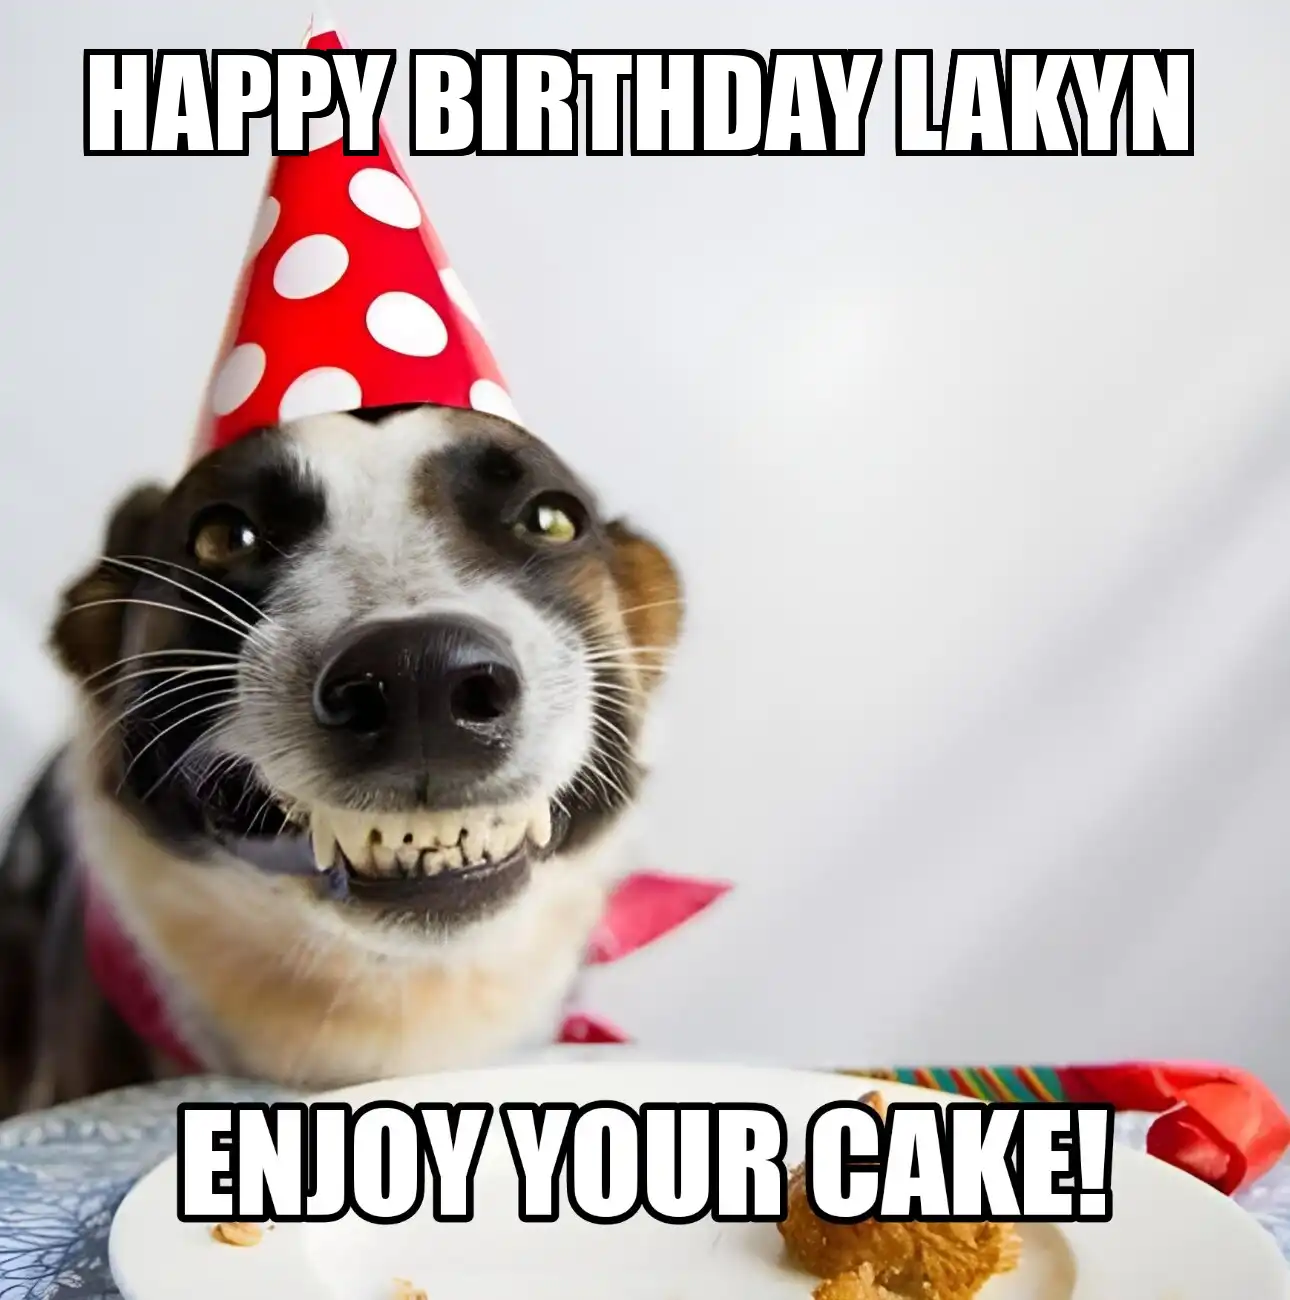 Happy Birthday Lakyn Enjoy Your Cake Dog Meme